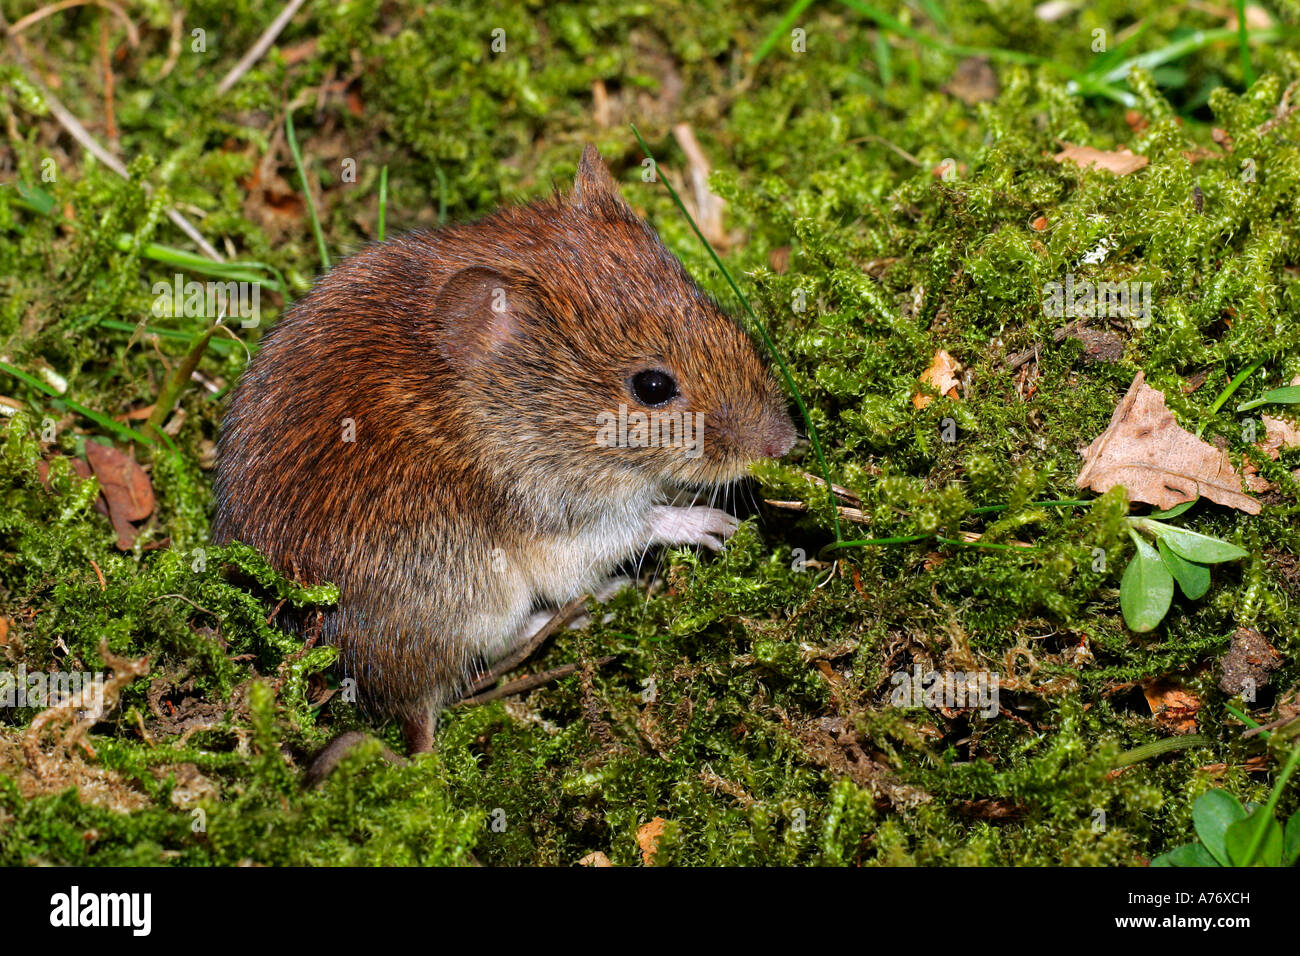 Bank vole - mouse - (Clethrionomys glareolus) (Myodes glareolus) Stock Photo